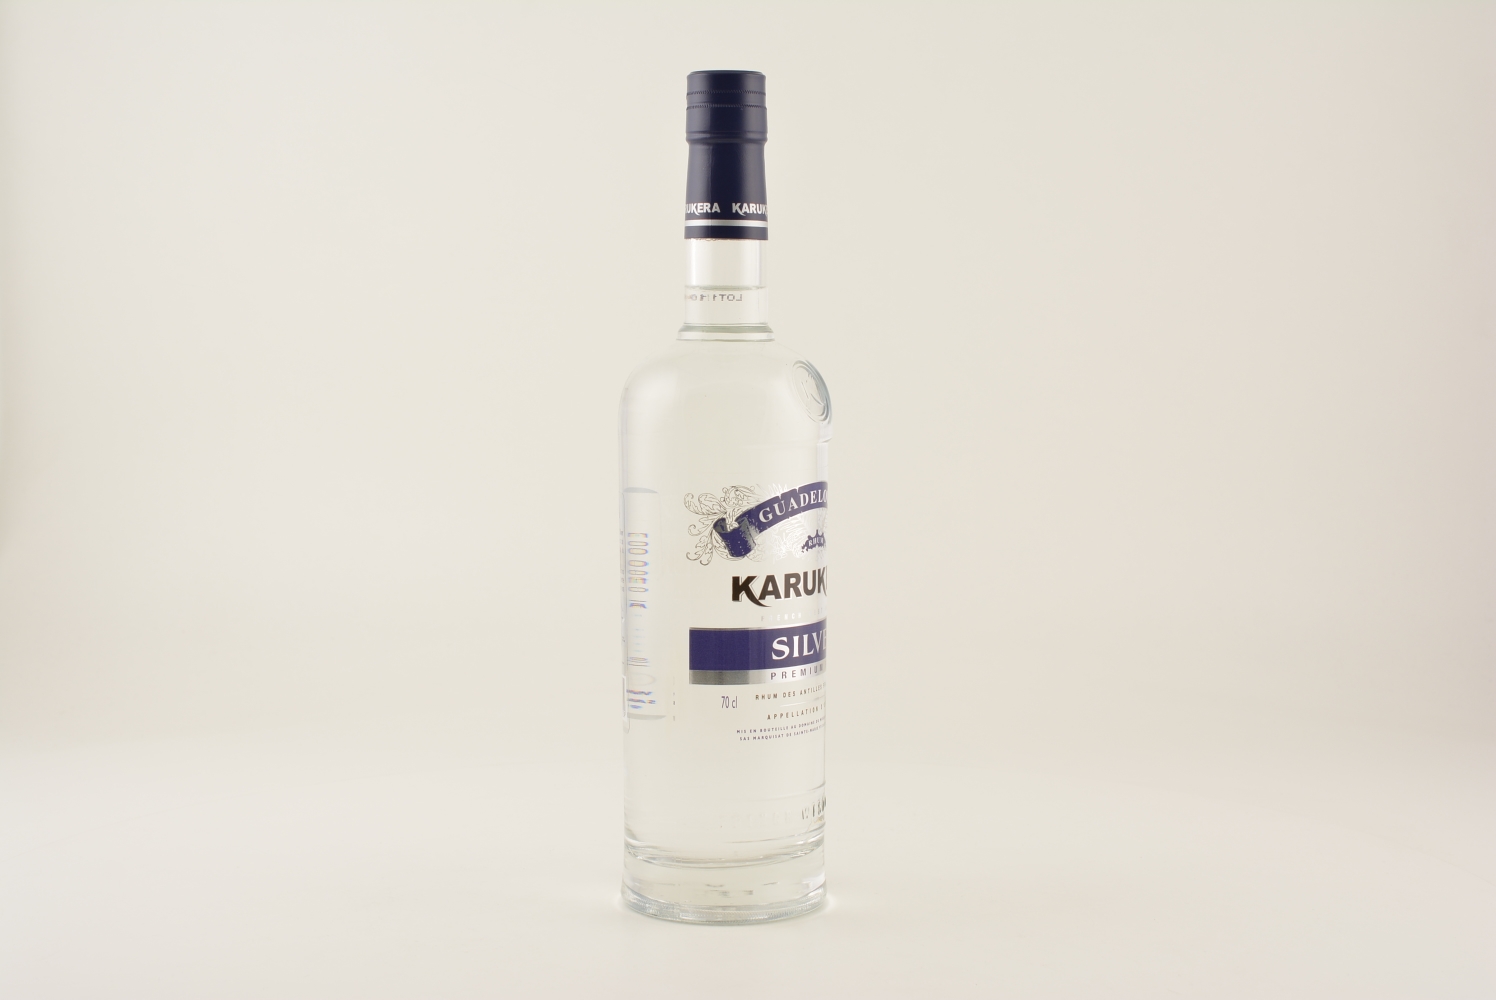 Karukera Silver Rum 40% 0,7l